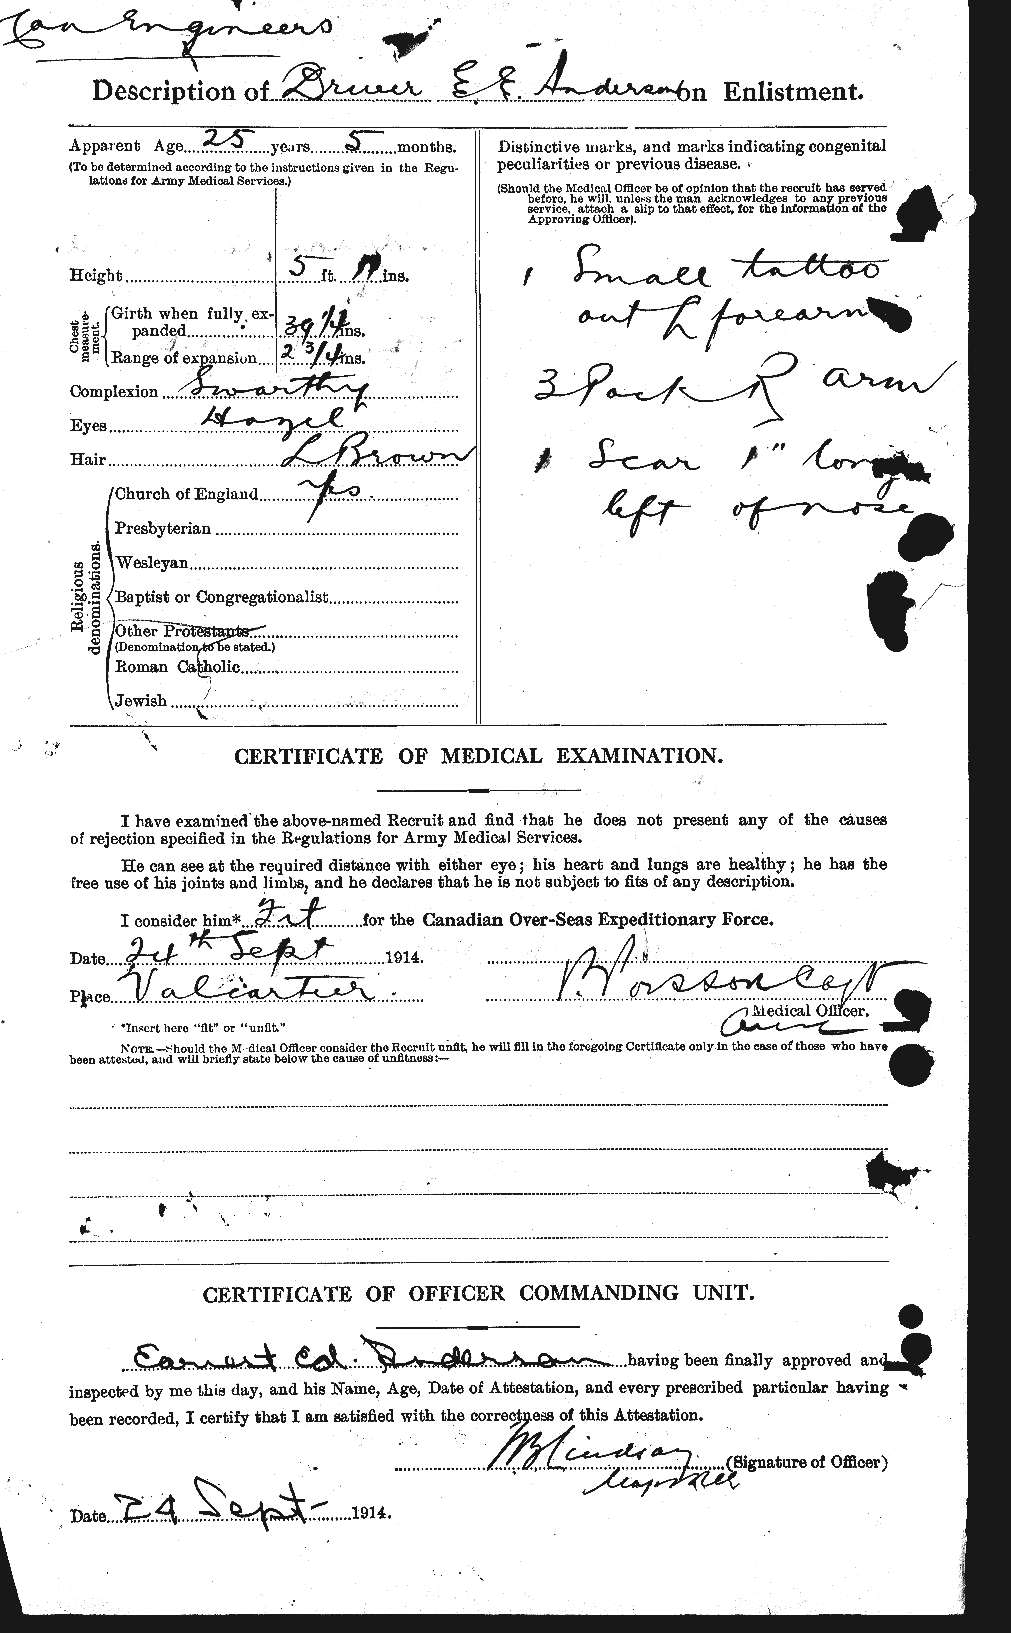 Dossiers du Personnel de la Première Guerre mondiale - CEC 209887b